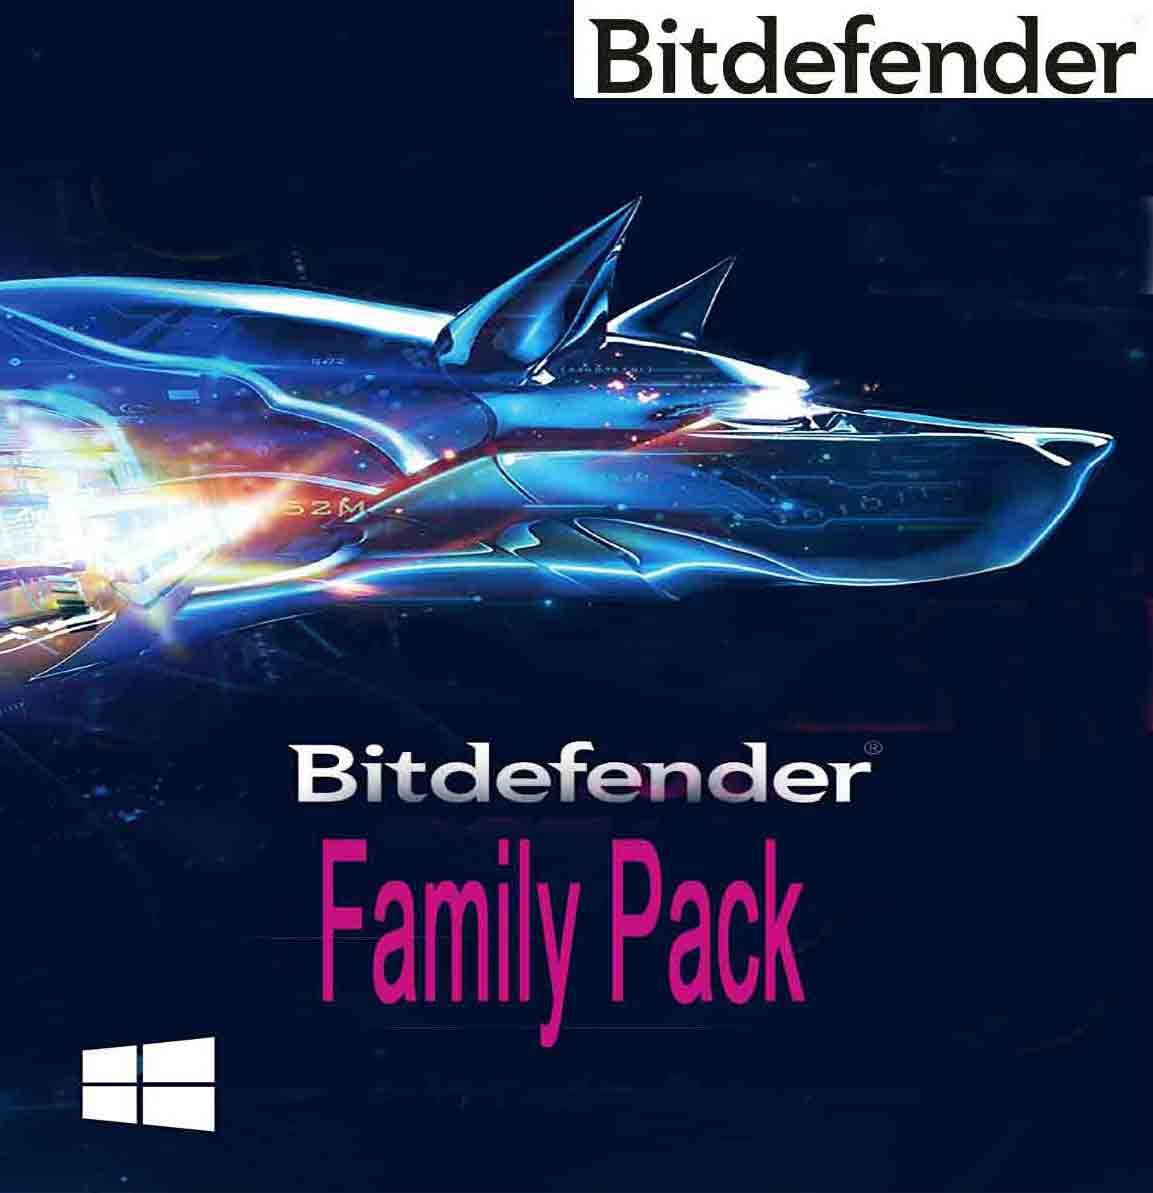 Bitdefender Family Pack License Key - 0800-090-3222 - Serial Key